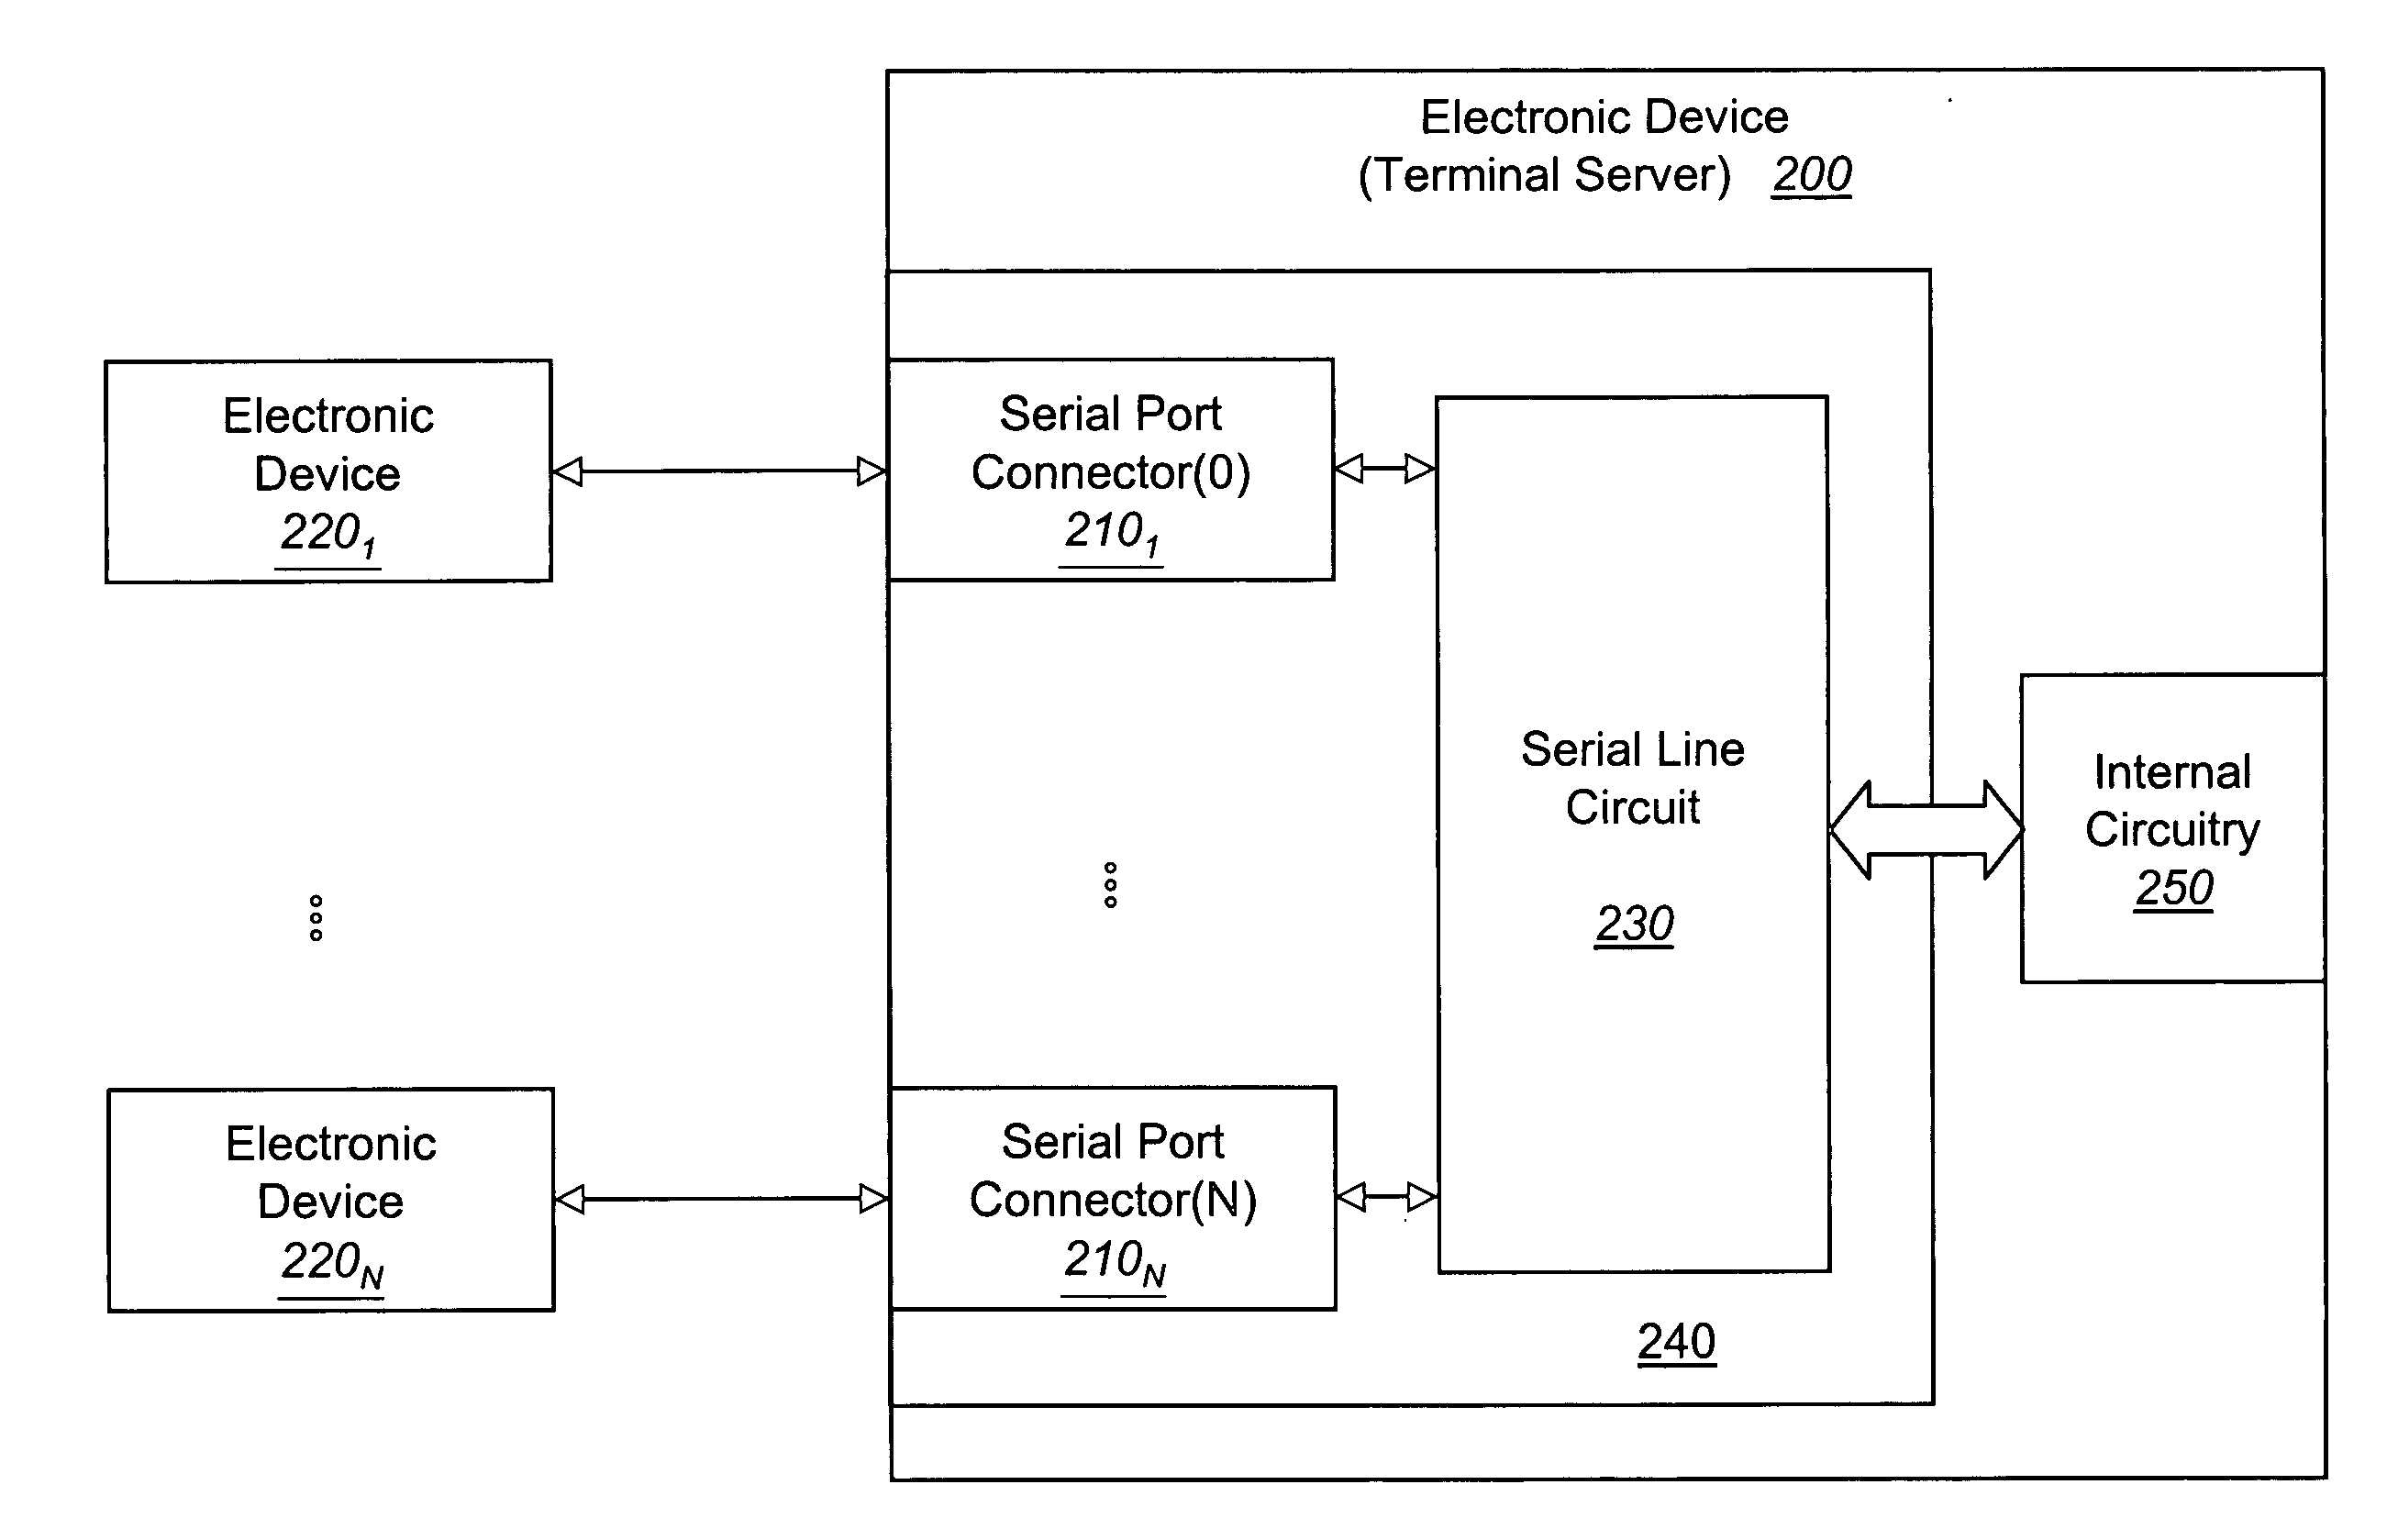 Serial line circuit